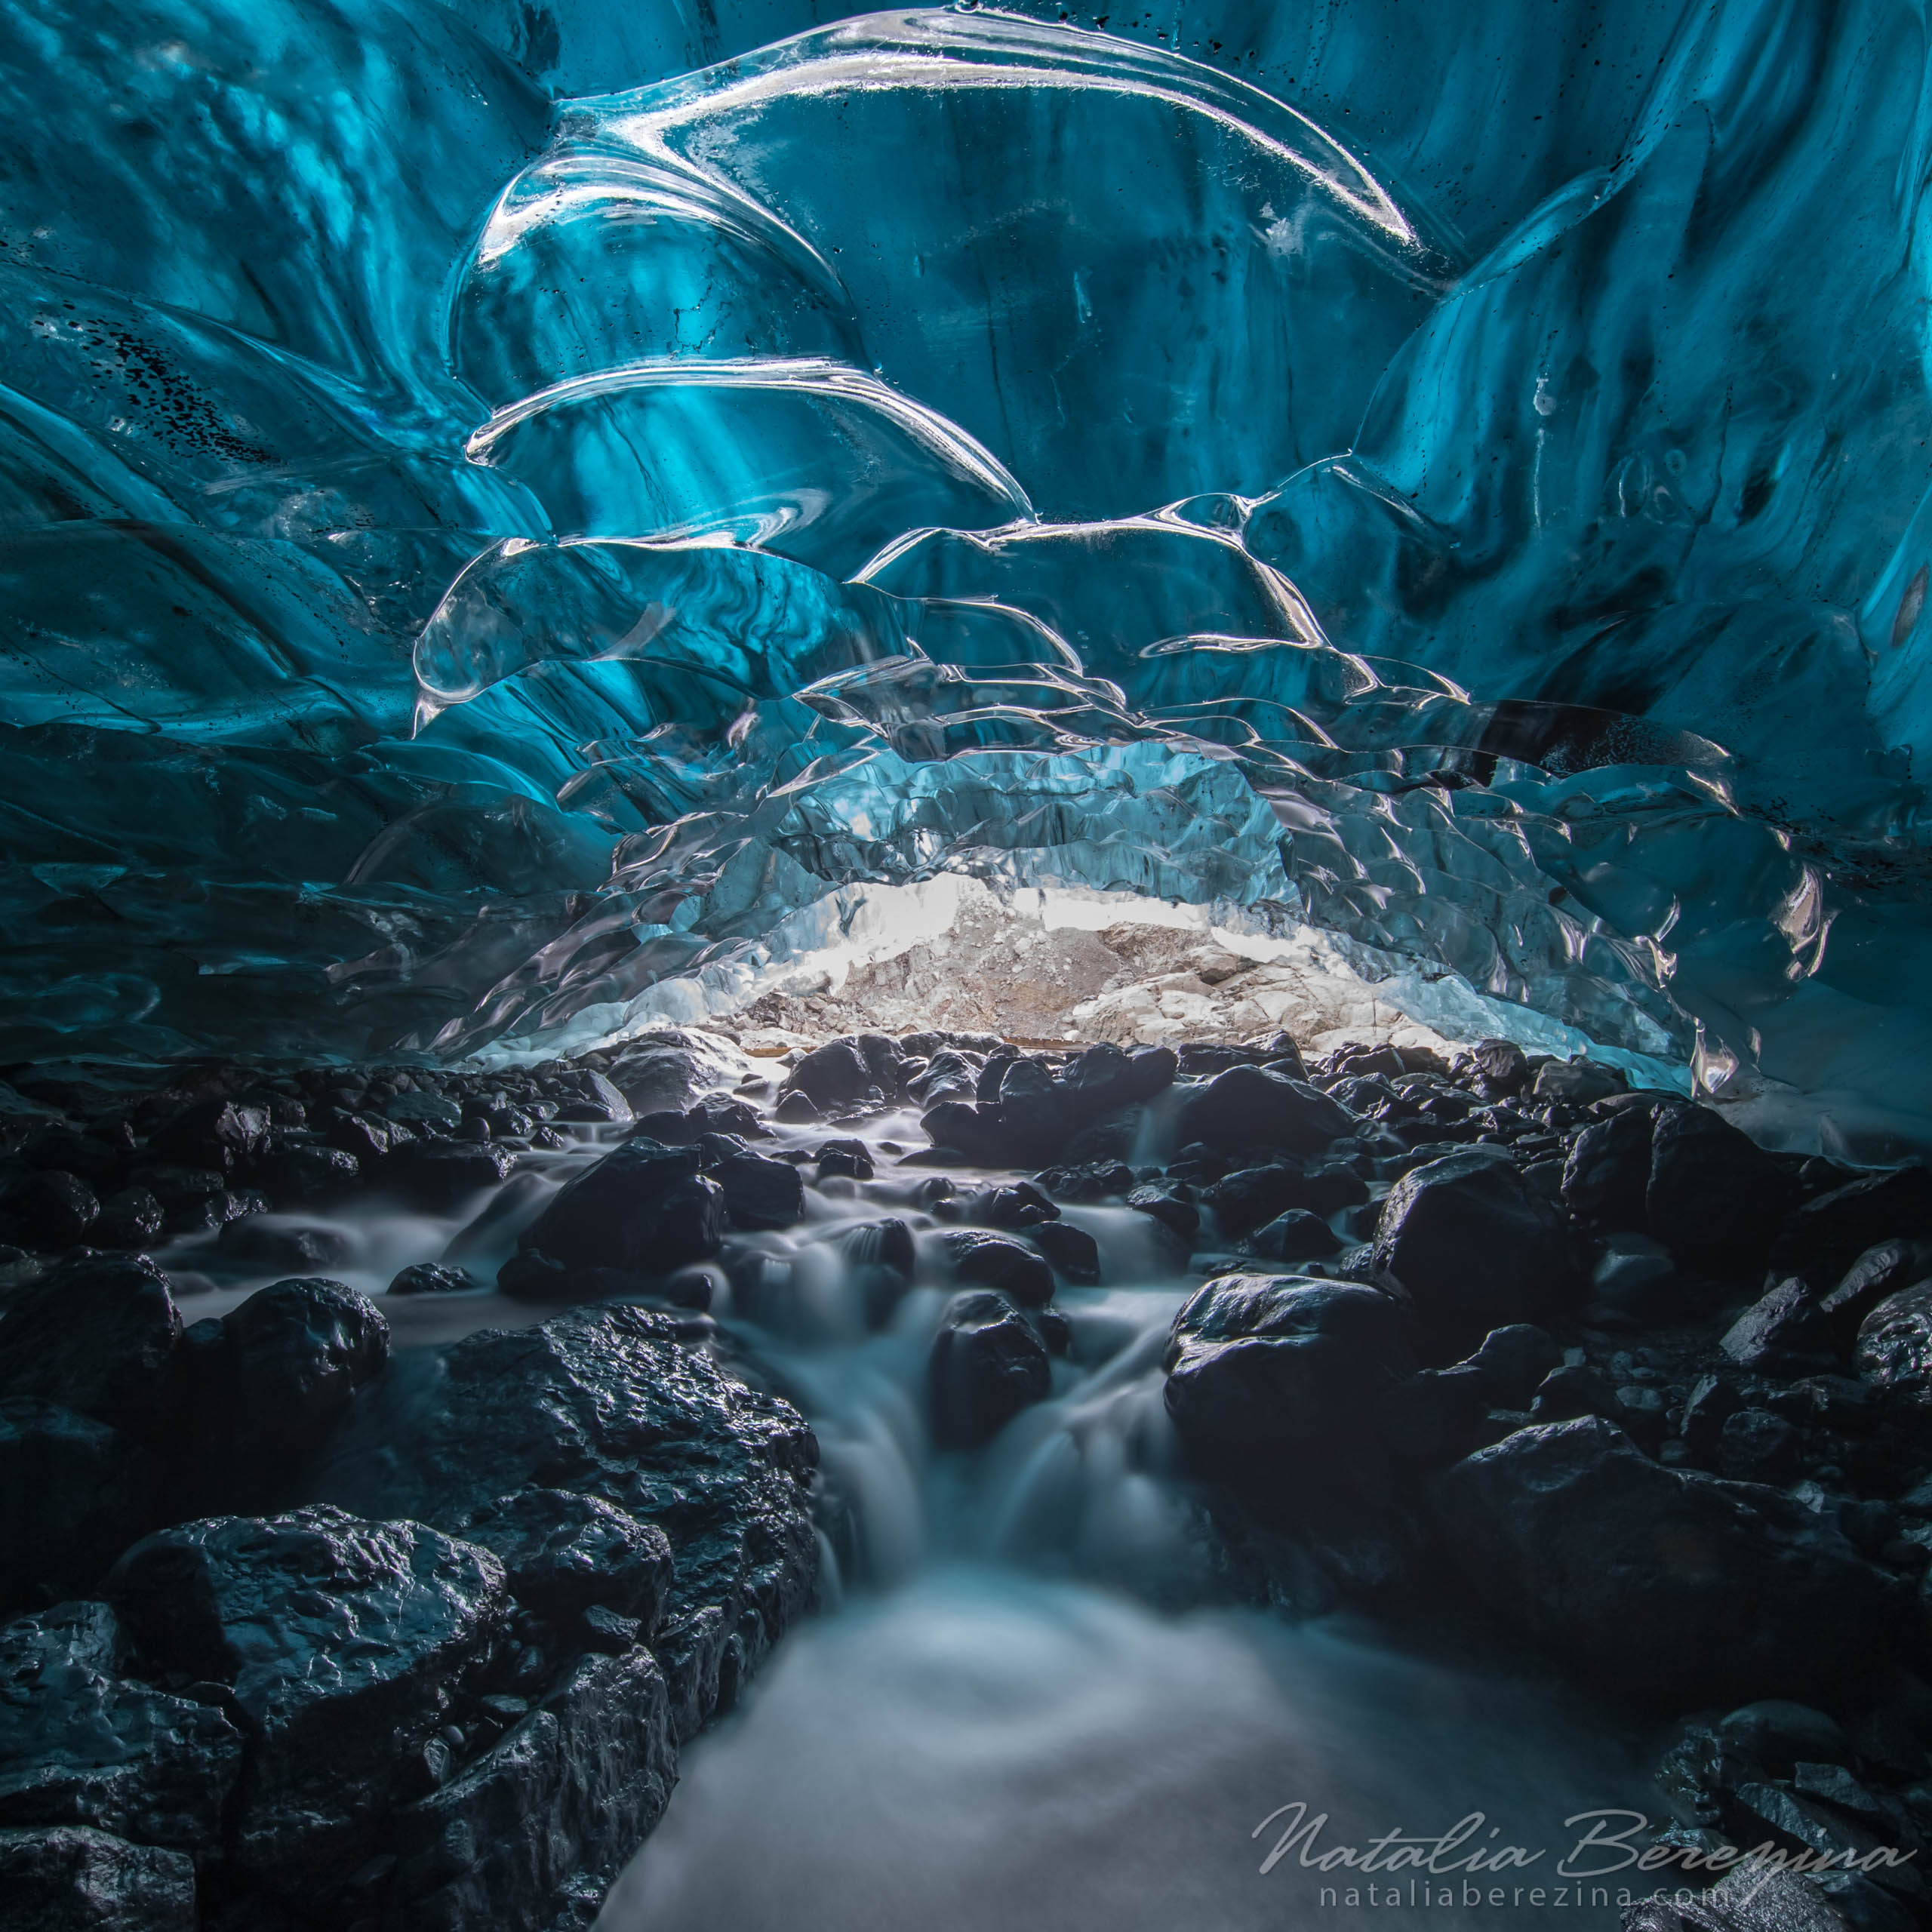 Iceland, ice, glacier, blue, 1x1 IC1-NBDK1U1748 - Iceland - Natalia Berezina Photography